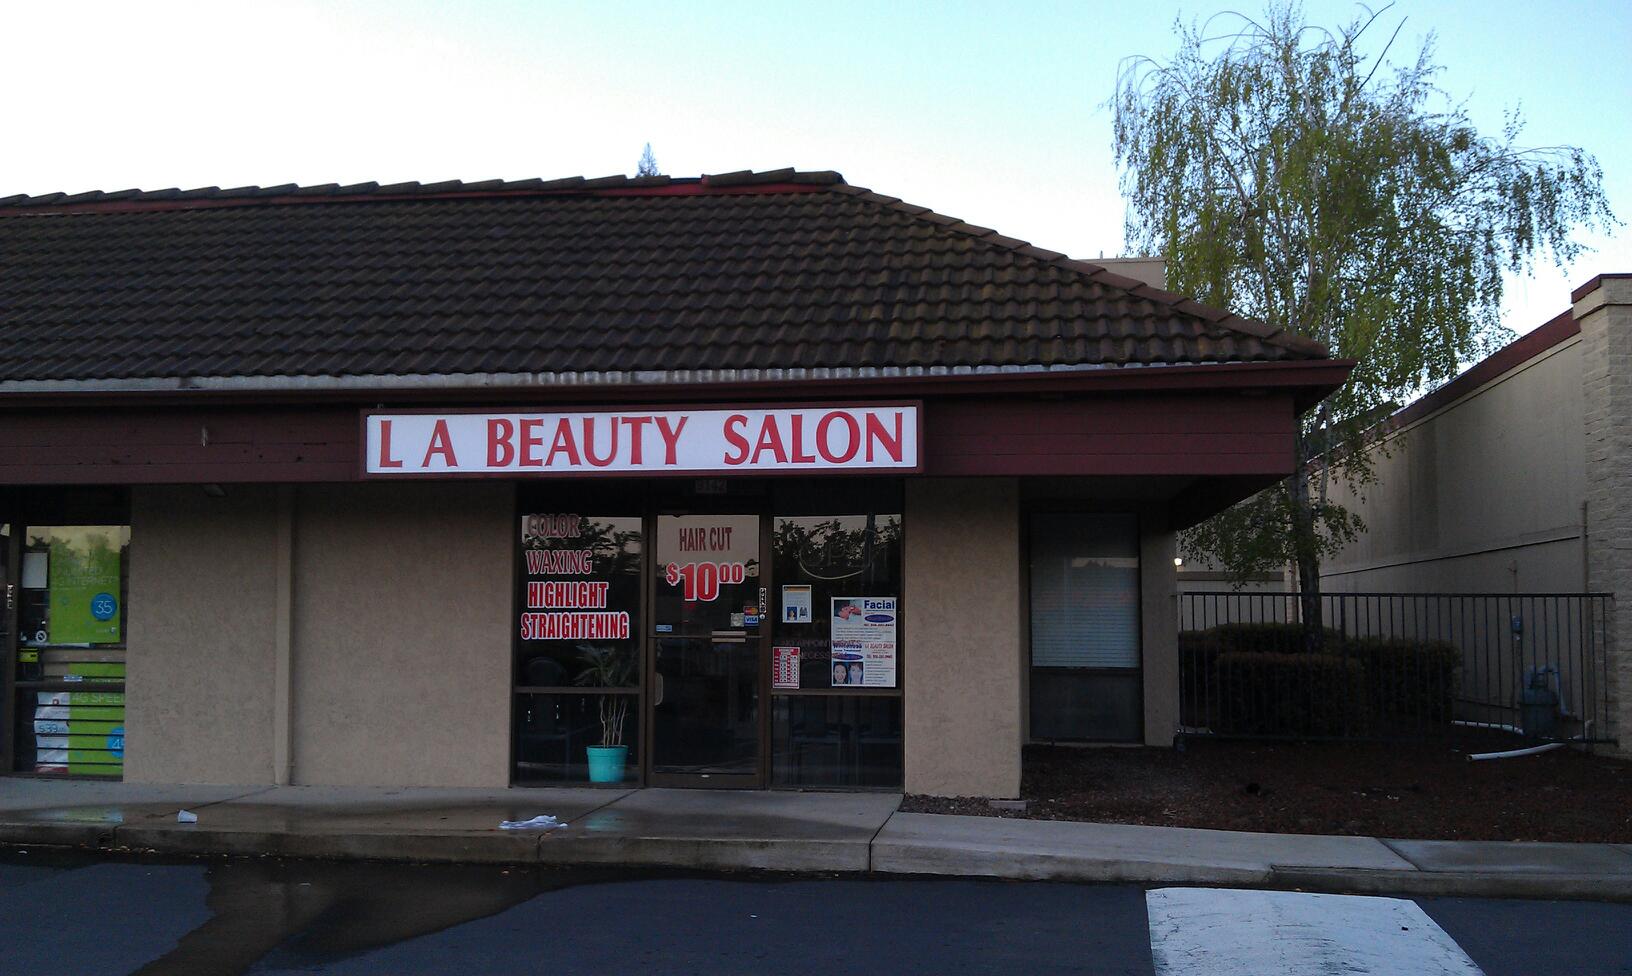 La Beauty Salon